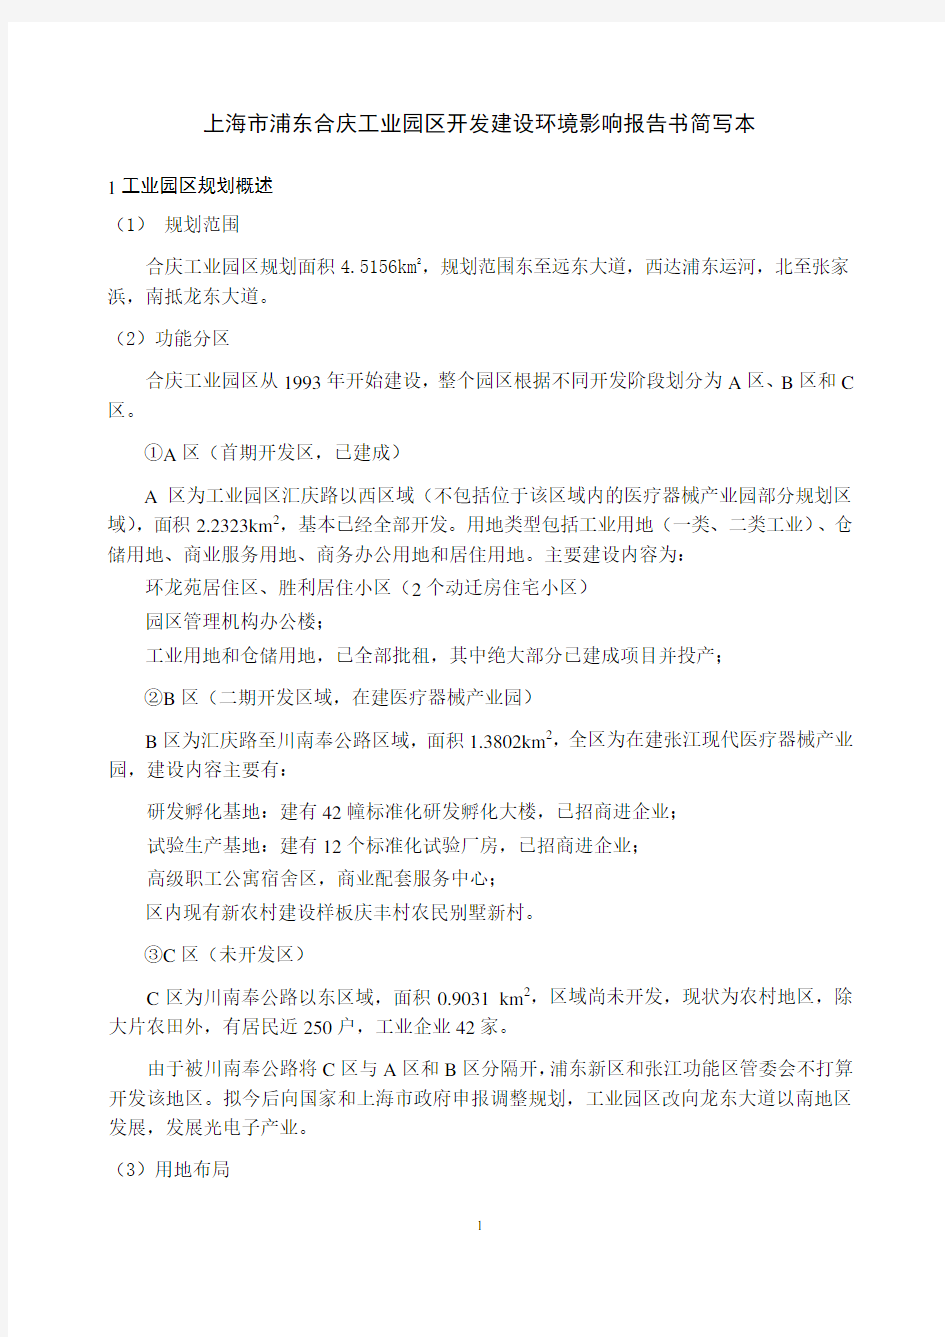 上海市浦东合庆工业园区开发建设环境影响报告书简写本